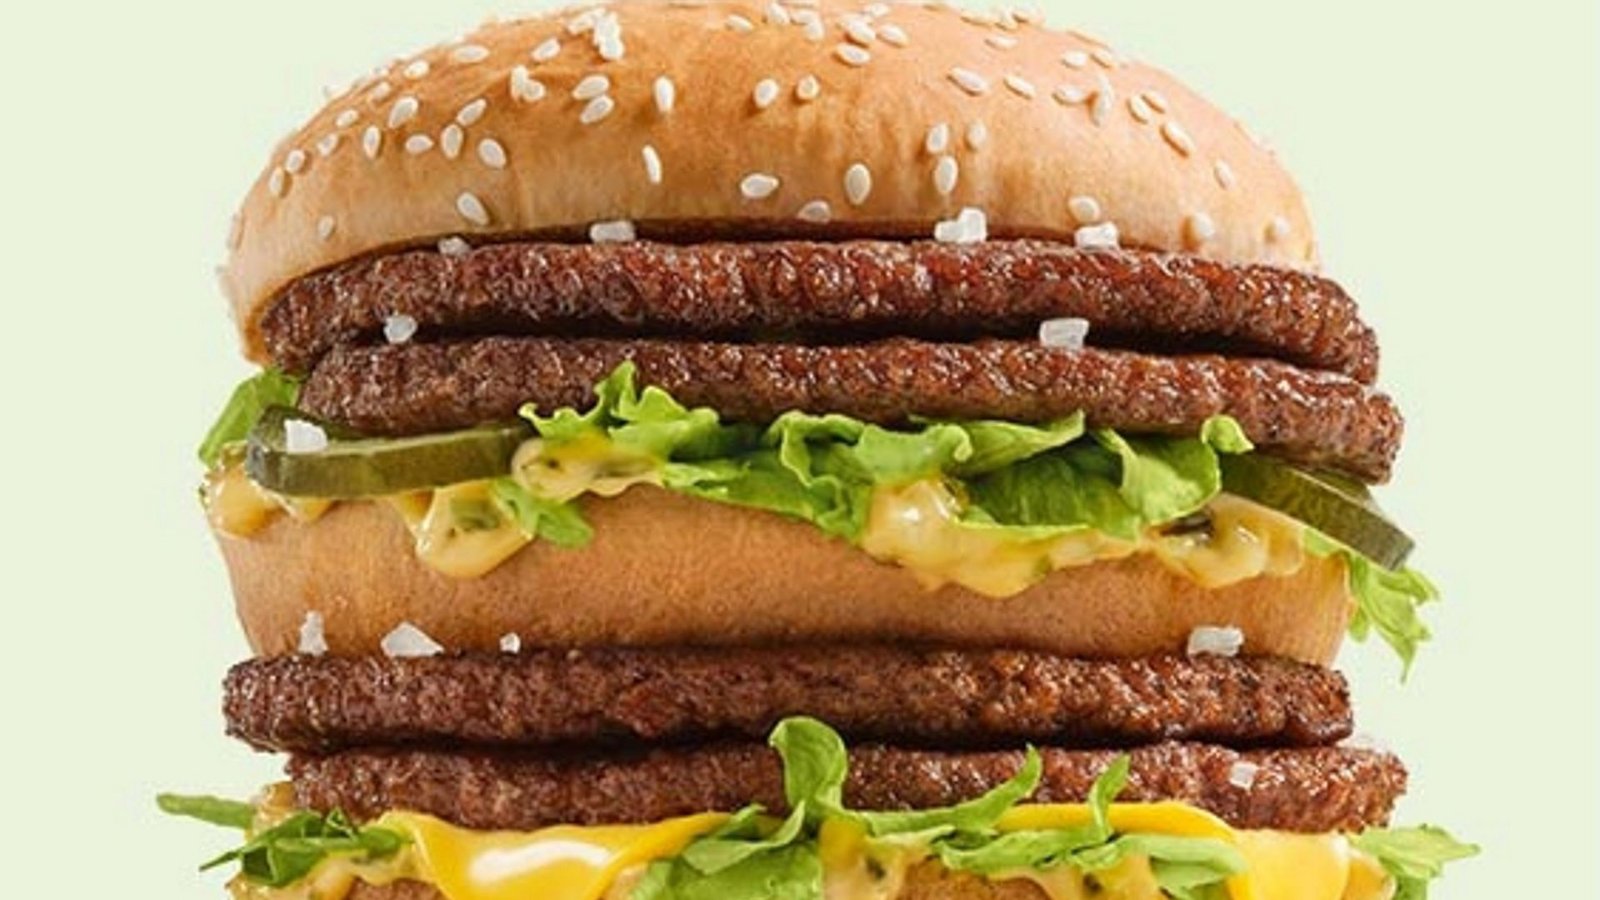 Der Preis für einen Big Mac ist je nach Land unterschiedlich, ermöglicht aber Vergleiche zur Kaufkraft in den Ländern.Foto: McDonald’s Deutschland